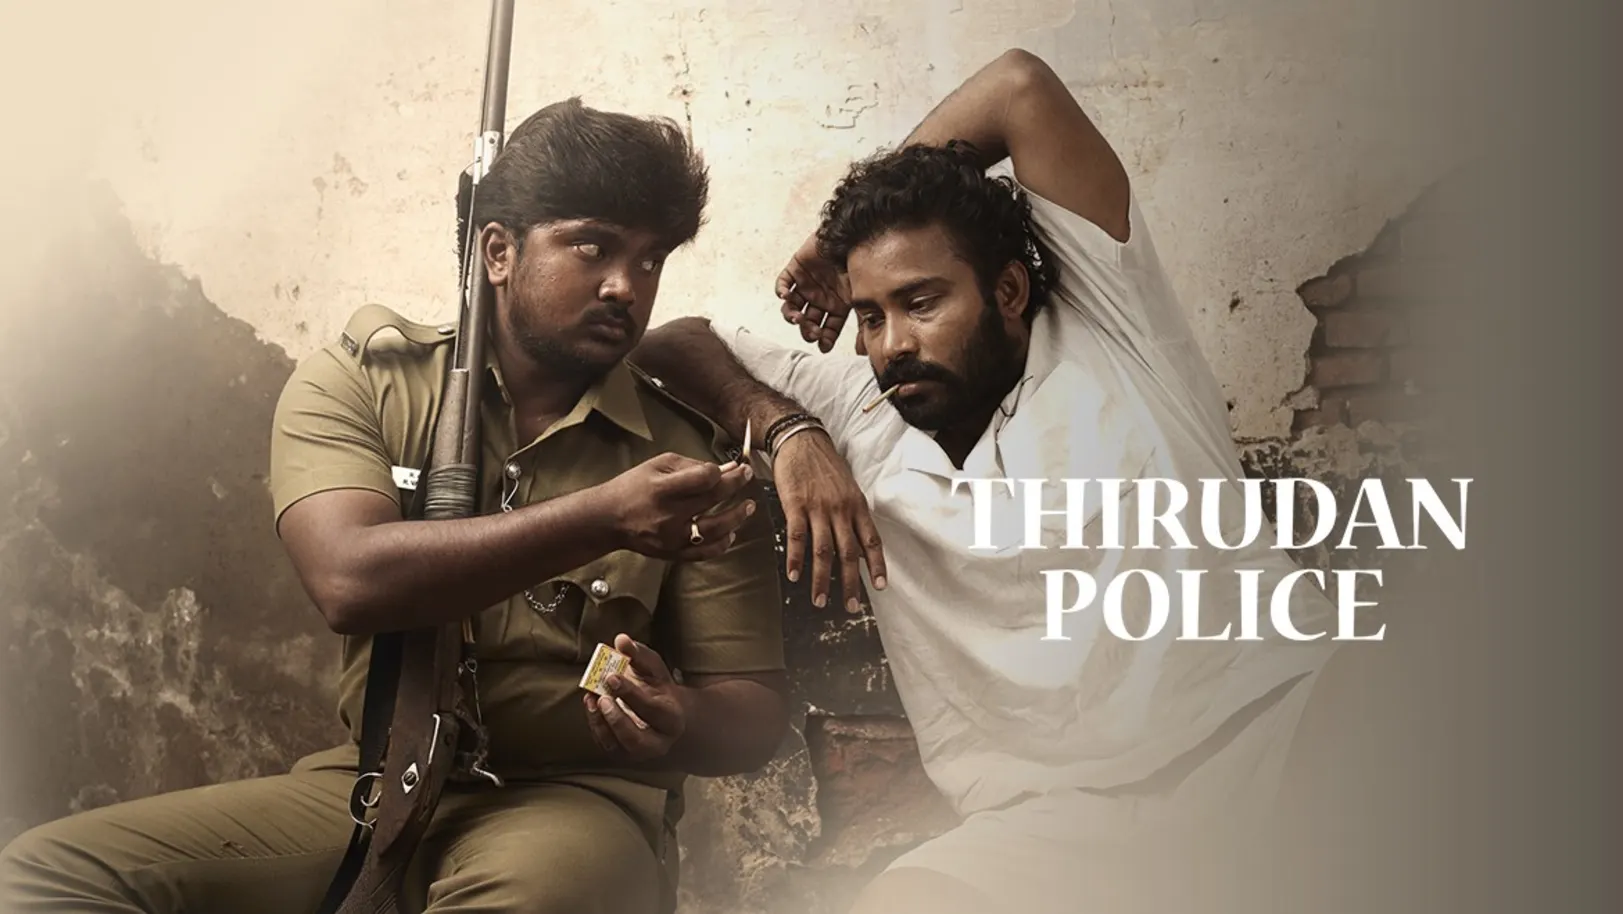 Thirudan Police Movie